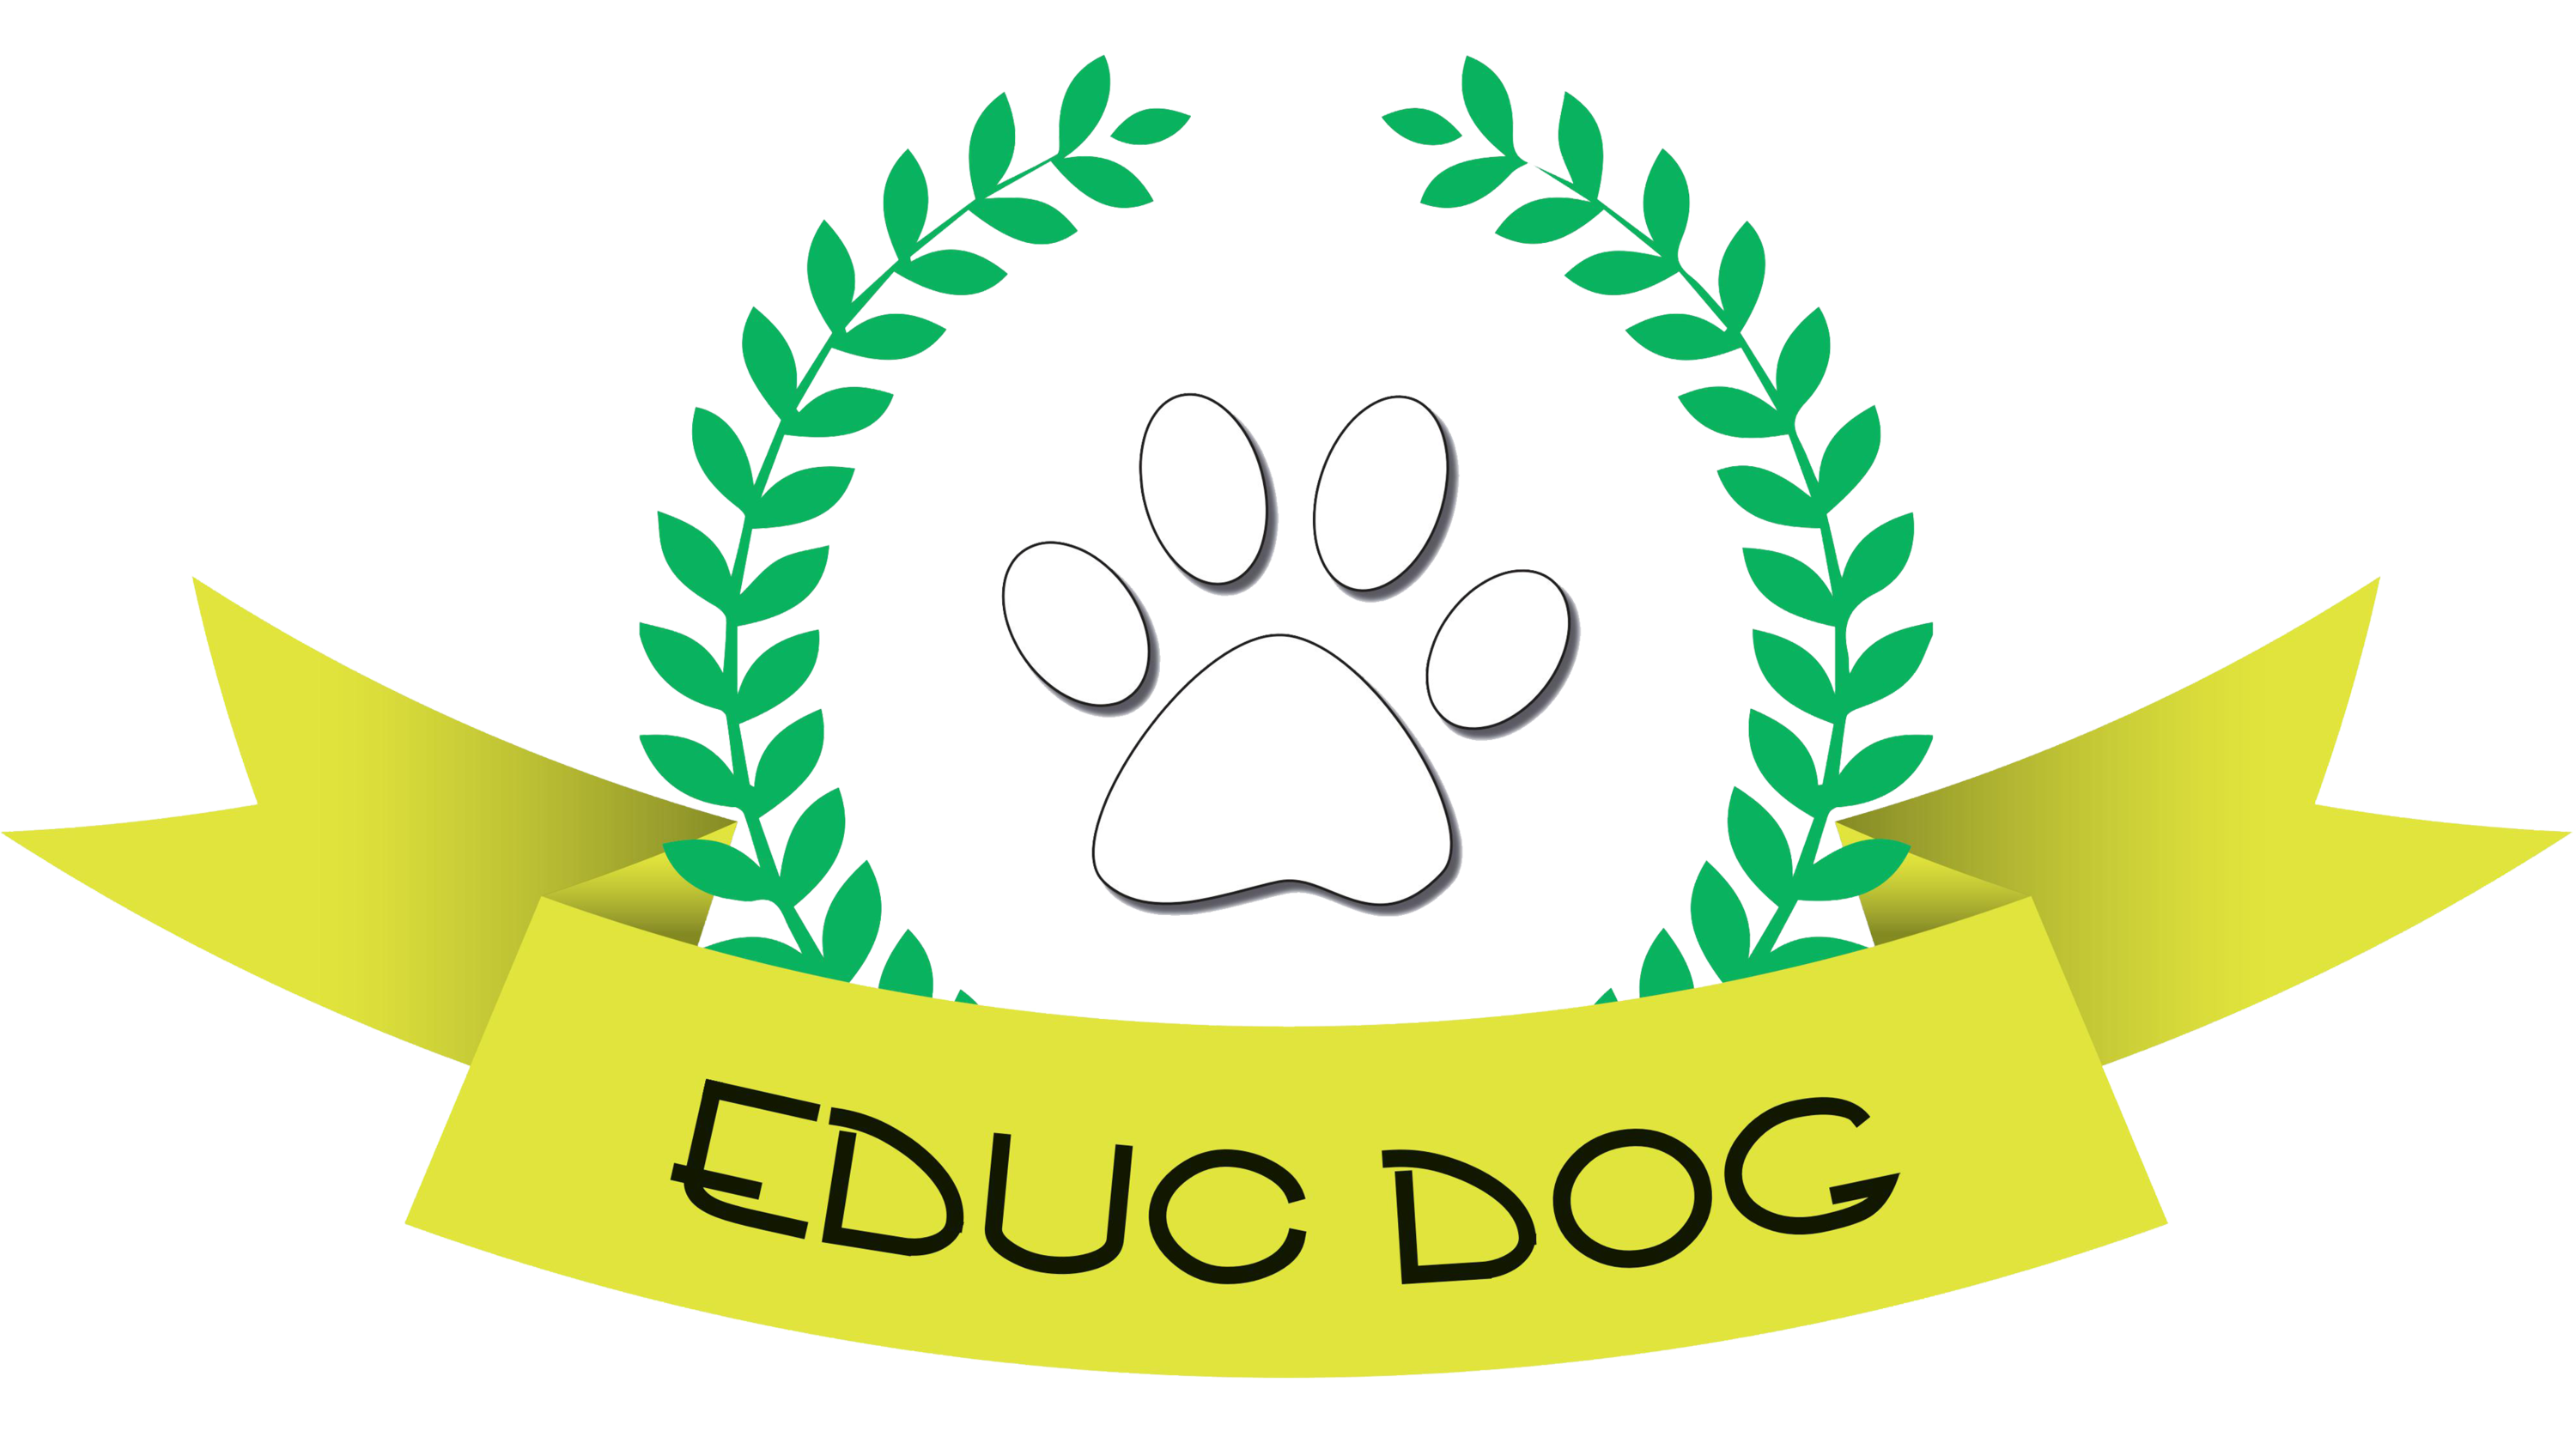 EDUC-DOG